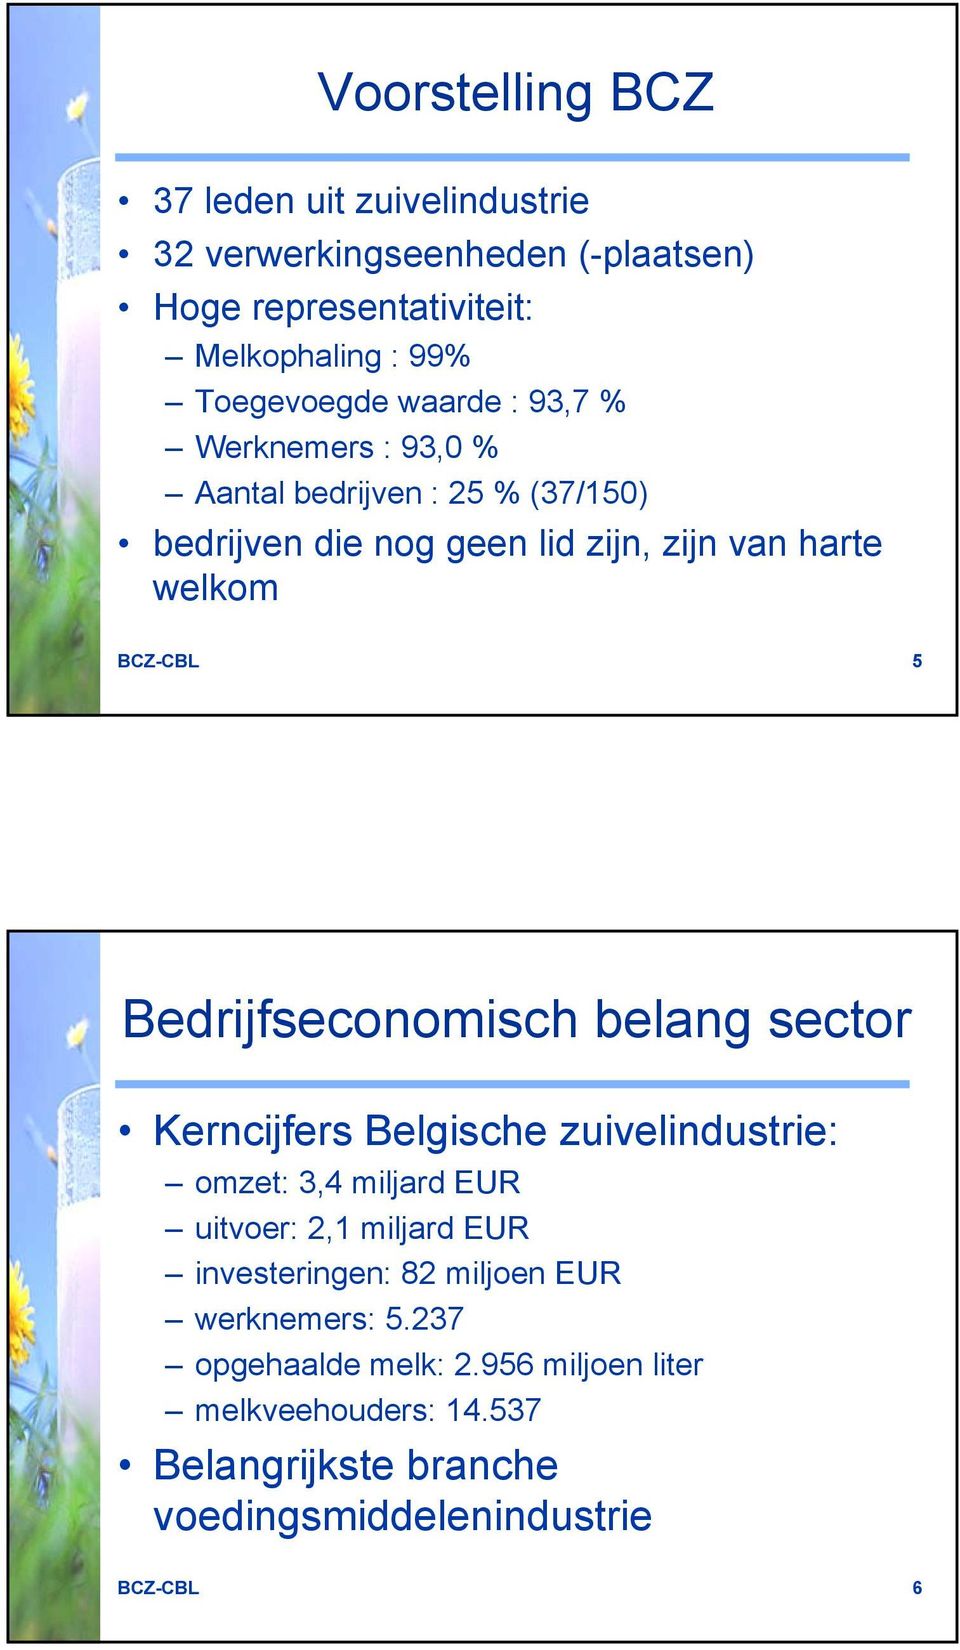 Bedrijfseconomisch belang sector Kerncijfers Belgische zuivelindustrie: omzet: 3,4 miljard EUR uitvoer: 2,1 miljard EUR investeringen: 82